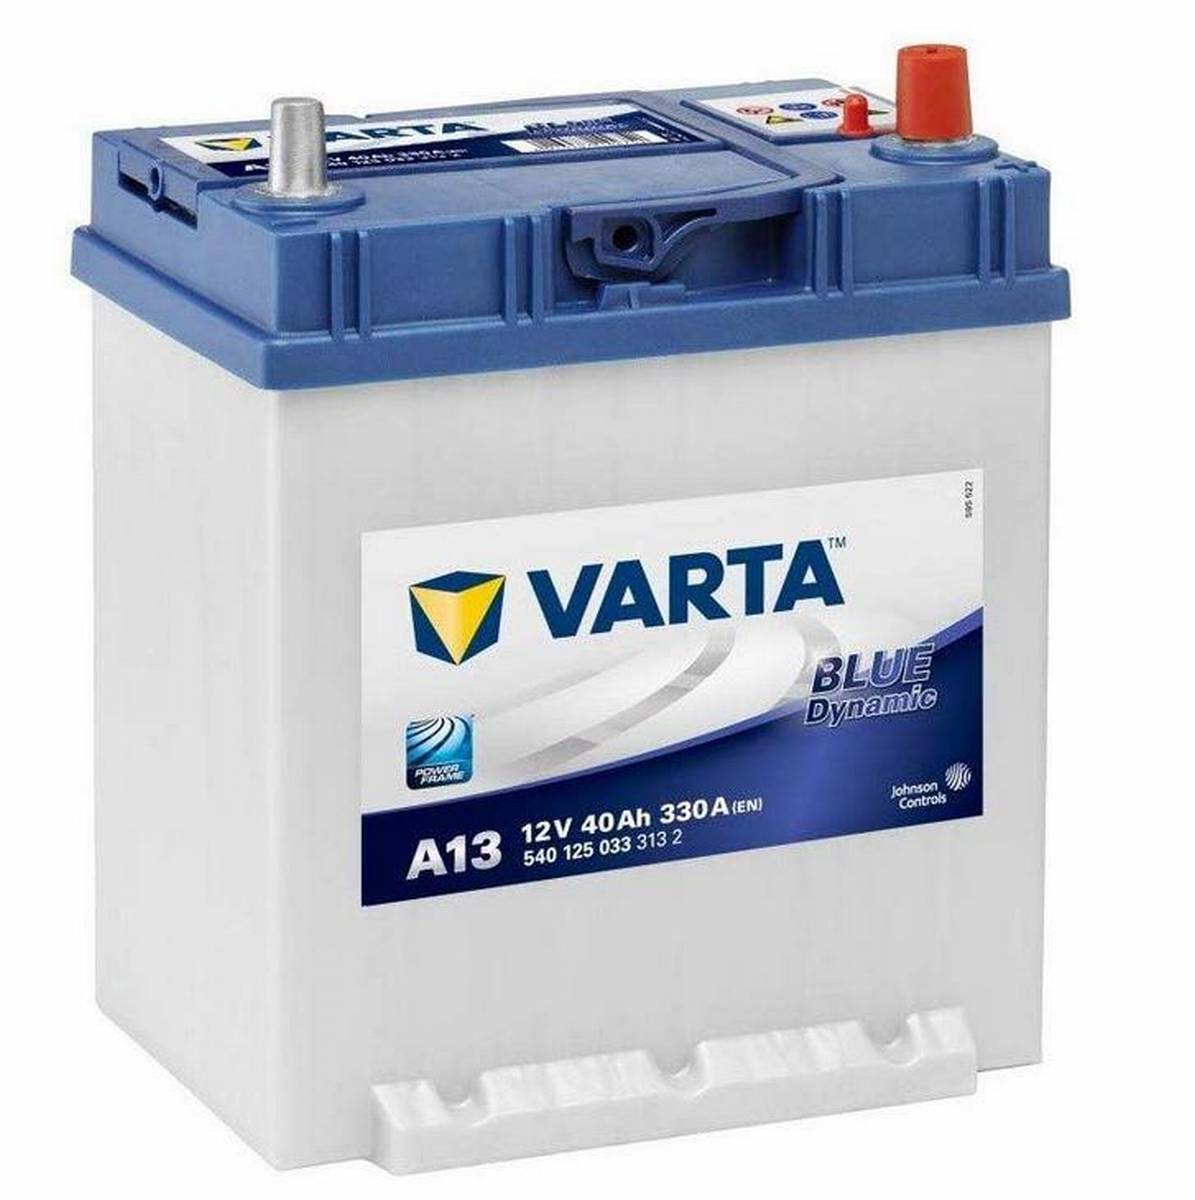 Varta BLUE Dynamic 540 125 033 3132 A13 12Volt 40Ah 330A/EN car battery, Starter batteries, Boots & Marine, Batteries by application